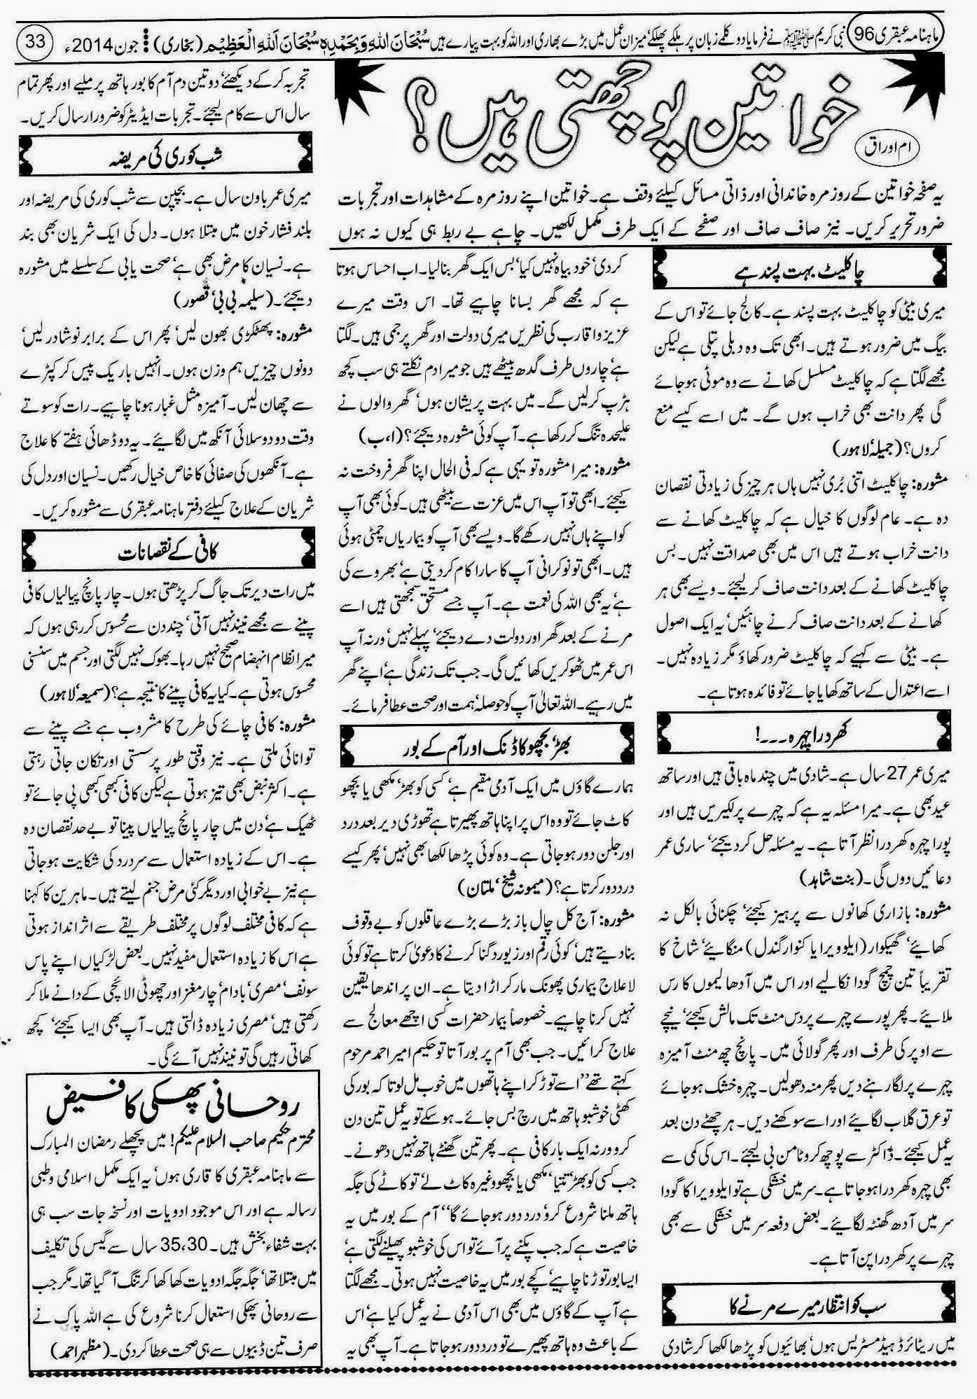 ubqari june 2014 page 33